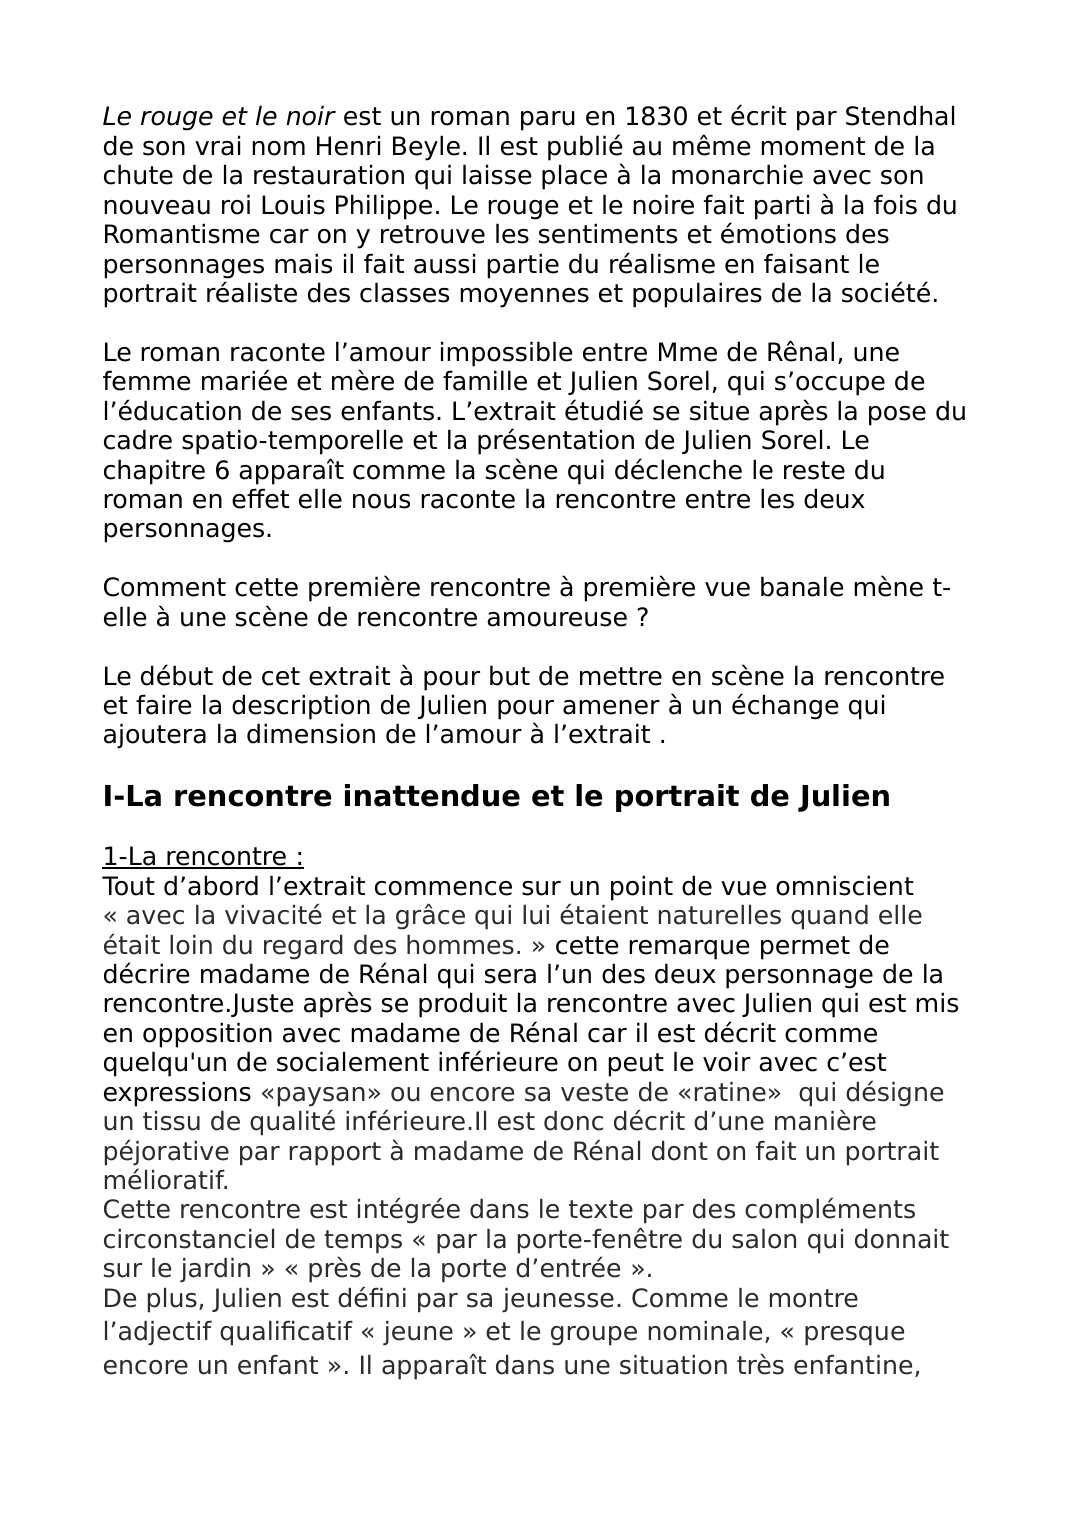 Prévisualisation du document Commentaire composé Le rouge et le noir La rencontre entre Julien Sorel et Madame de Rênal